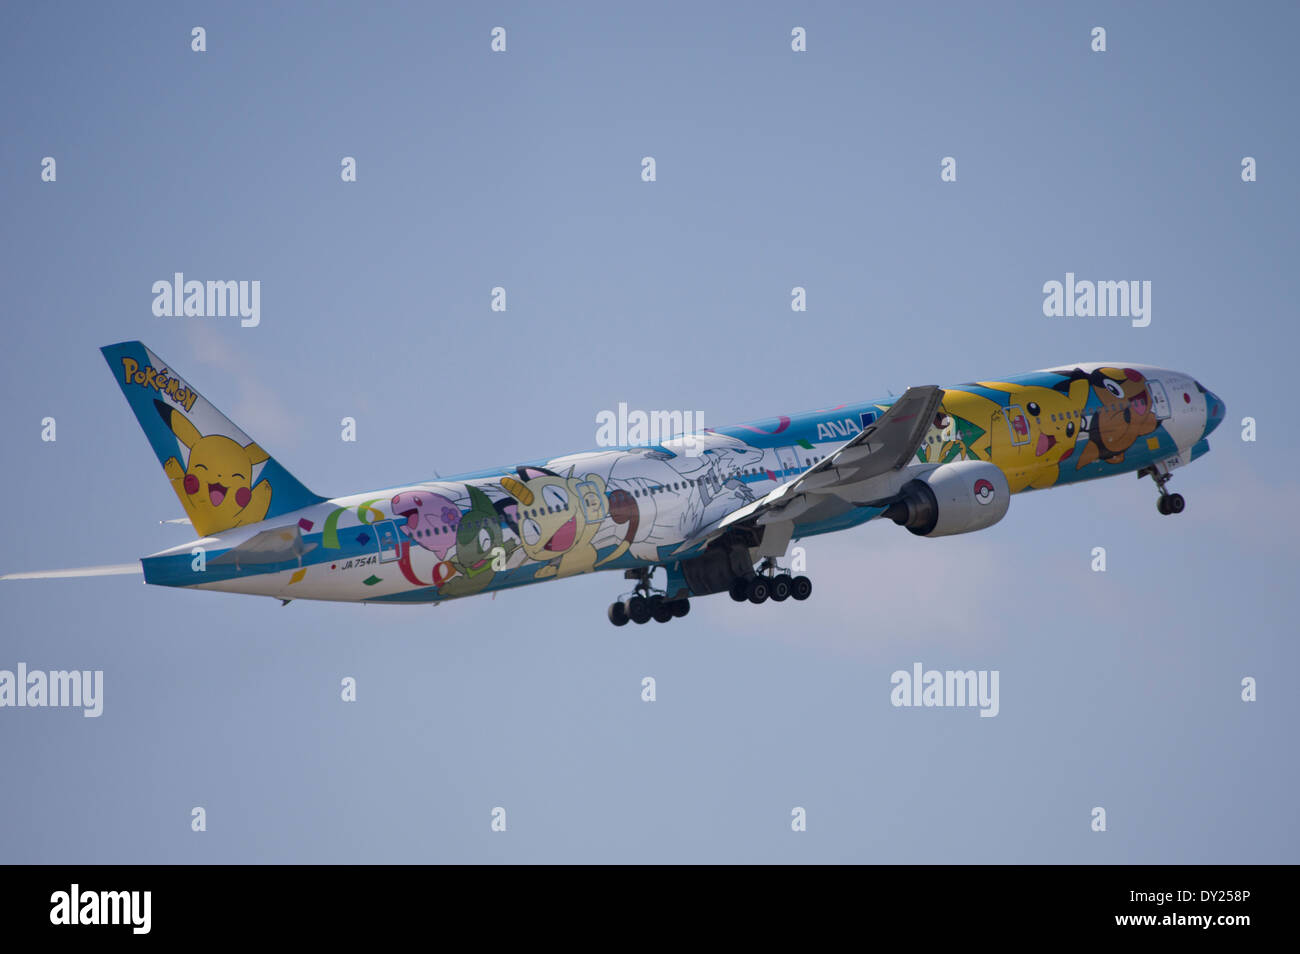 ANA Boeing 777-381 JA754un avión Pokemon ANA All Nippon Airways, la aerolínea más grande de Japón. Pikachu Pocket Monster Anime Character Foto de stock